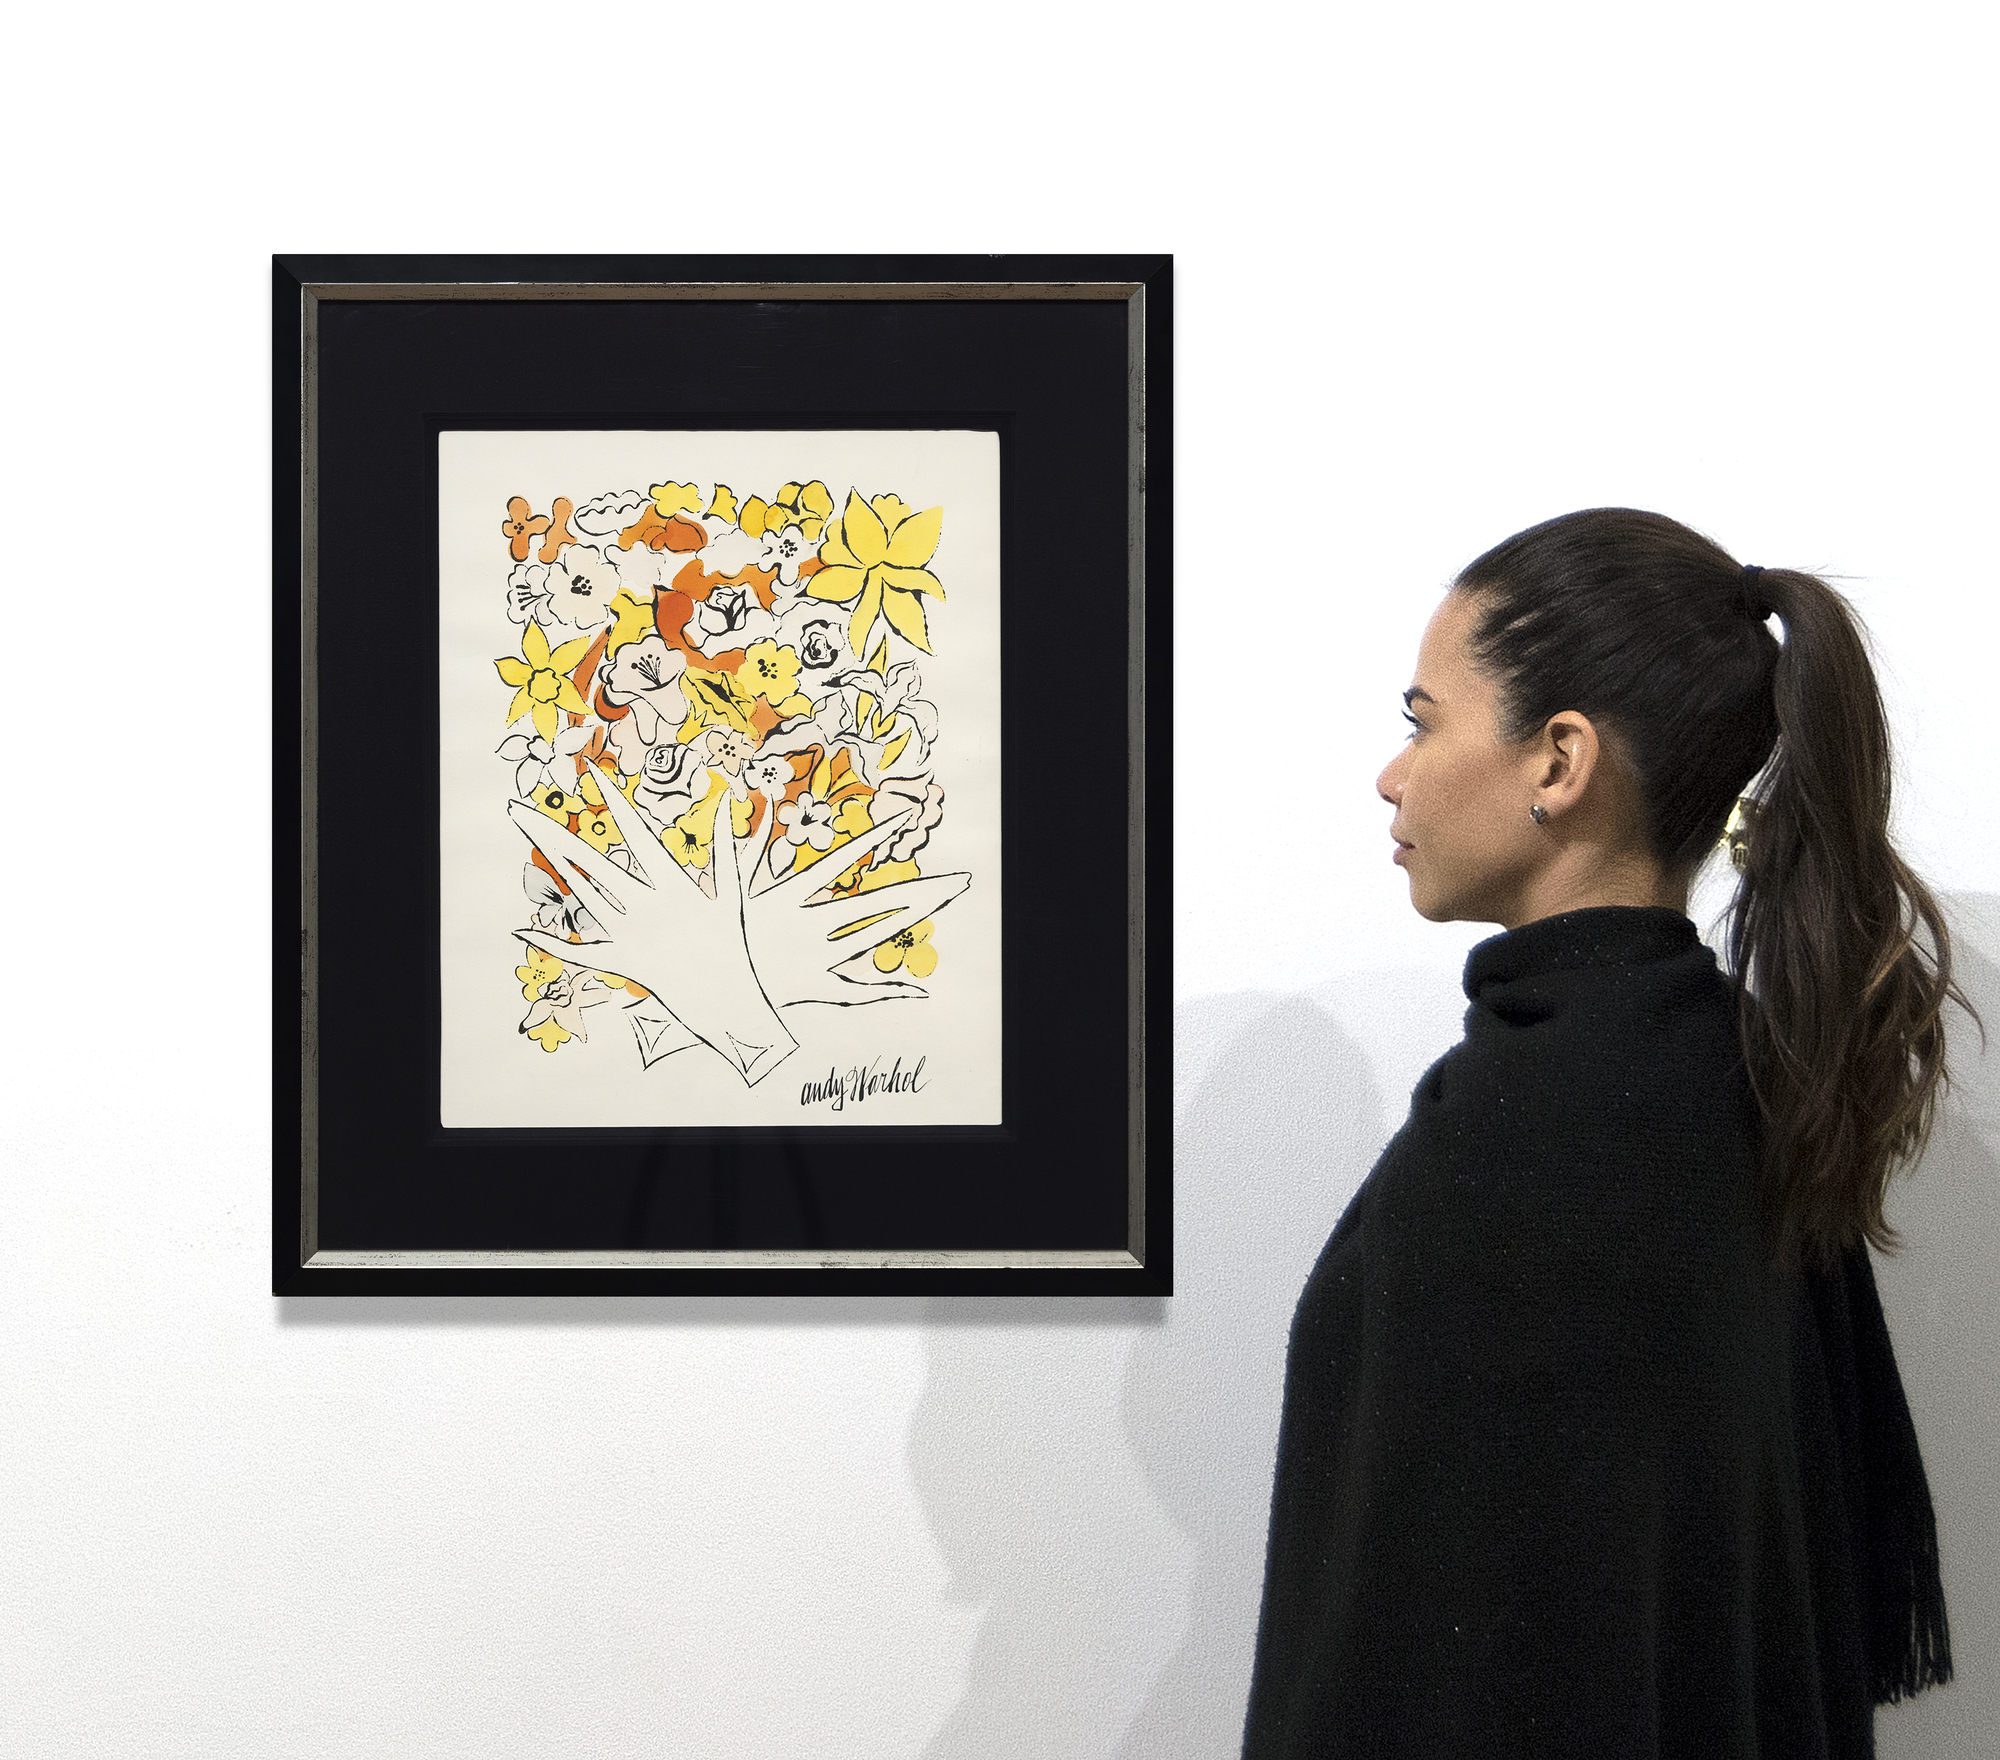 Souvent négligés, les dessins à l&#039;encre et au colorant de Warhol révèlent son talent pour réduire les motifs et les éléments à leur nature essentielle, grâce à une économie de trait et à une merveilleuse espièglerie qui caractérise chacun d&#039;entre eux. Ils nous rappellent souvent que l&#039;art peut être un vecteur efficace d&#039;humour et de fantaisie s&#039;il est simple et fluide. Untitled, Flowers est une préfiguration de sa célèbre mise en page pour Vogue en 1960, combinant des dessins de fleurs dans des couleurs fluorescentes. Elle anticipe la tendance précoce de Warhol à séparer la ligne de la couleur, un procédé qui donnera plus tard à ses images sérigraphiées leur immédiateté abstraite.